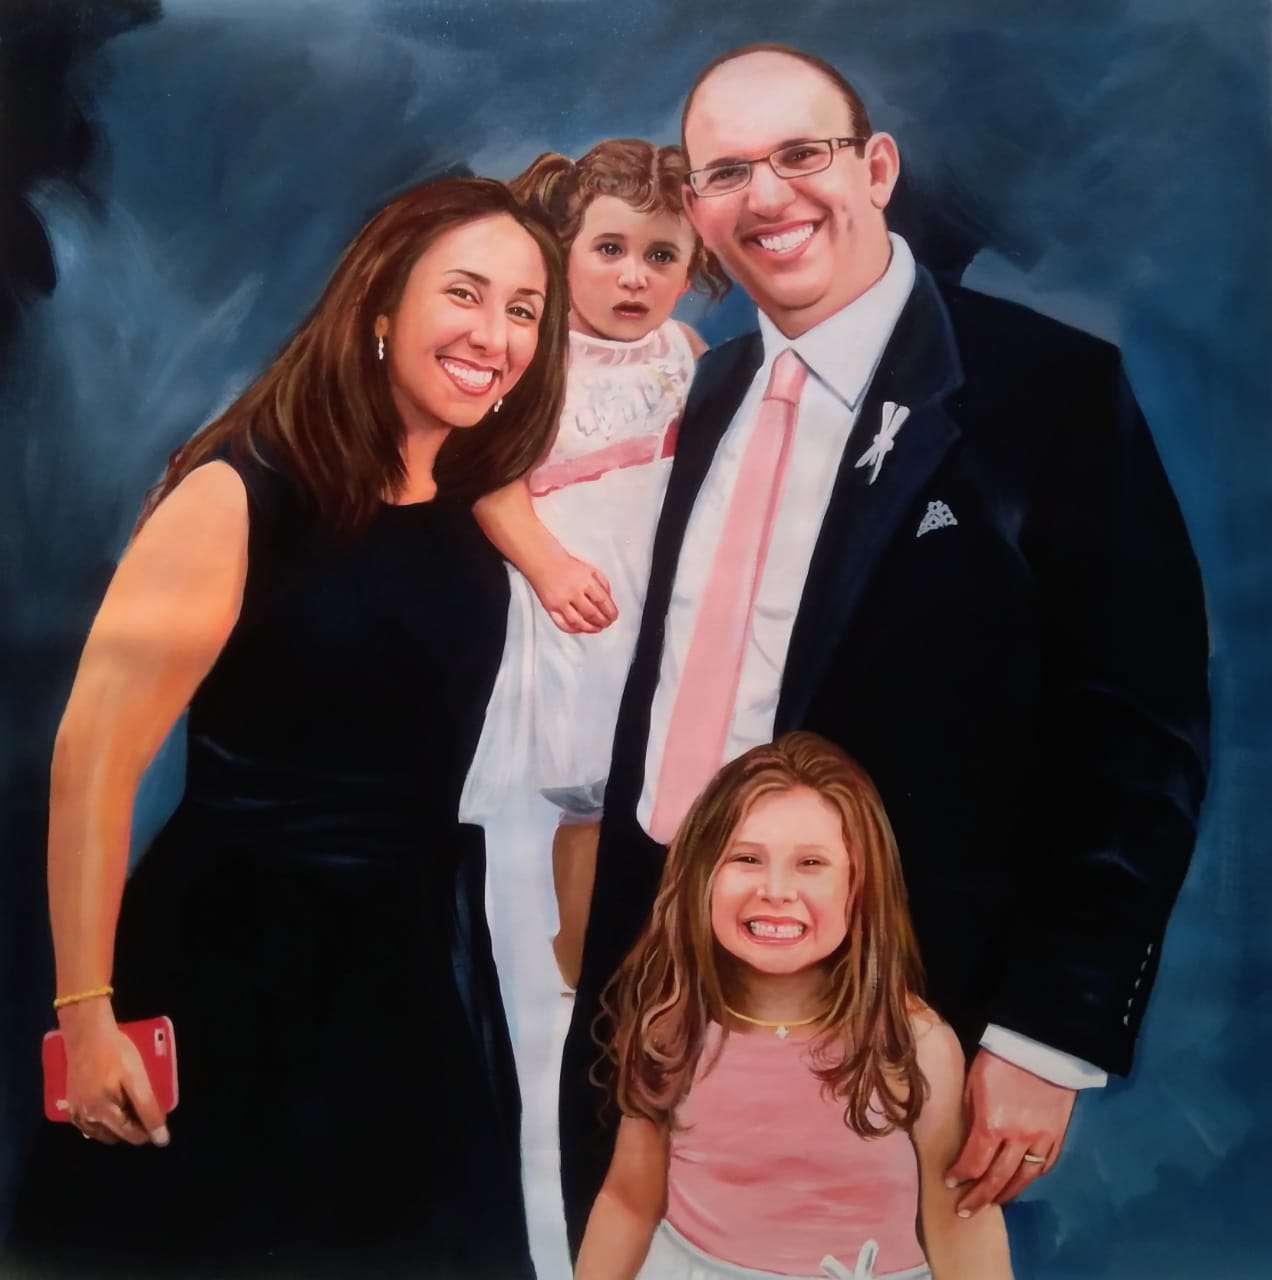 family portrait painting, oil painting portrait, portrait painting, painting of a photo, family gift